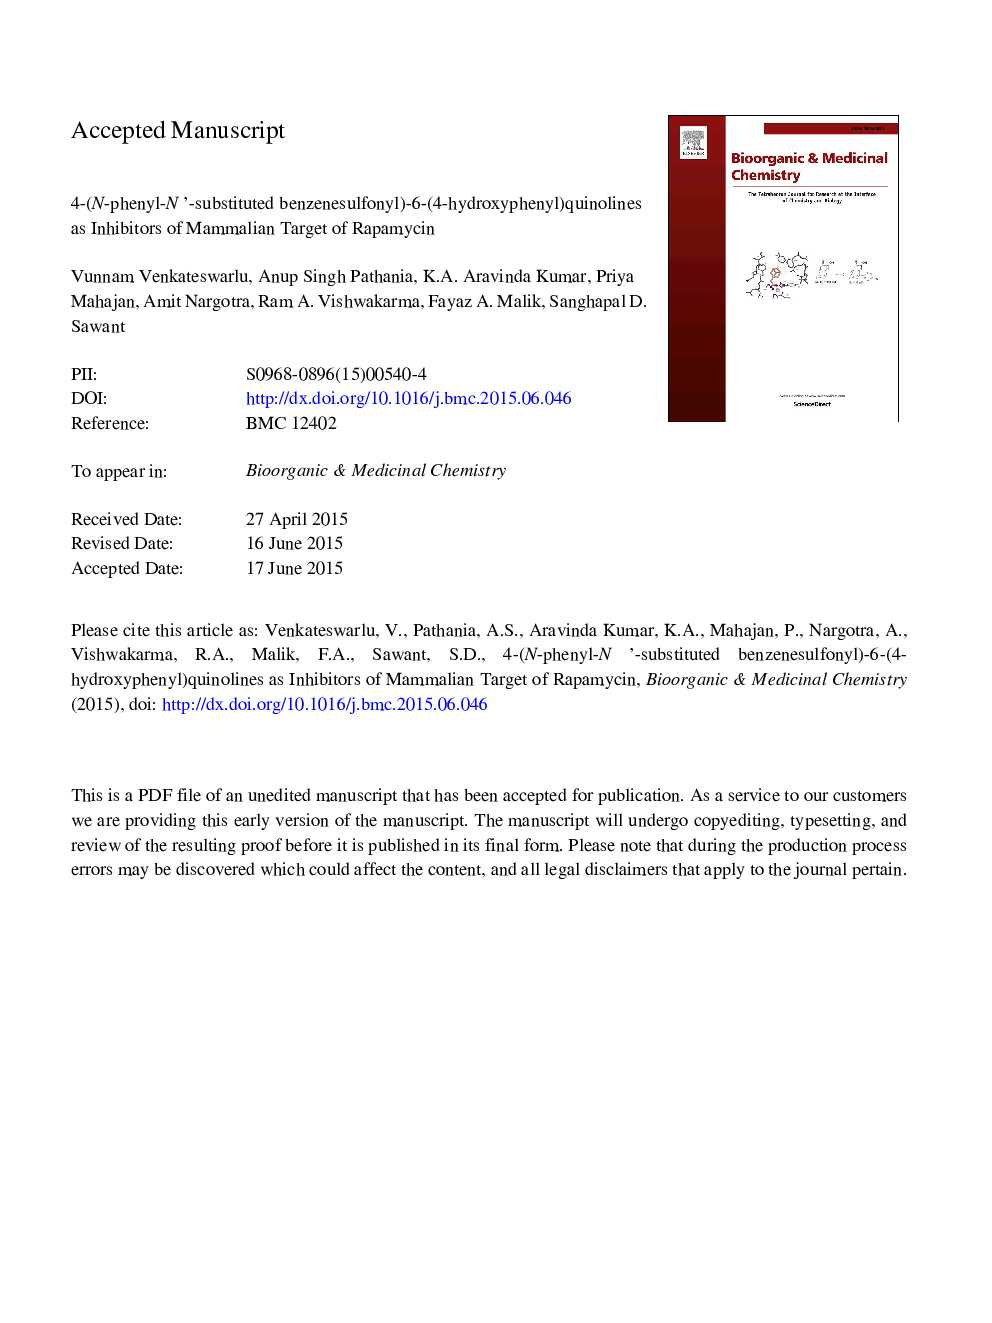 4-(N-Phenyl-Nâ²-substituted benzenesulfonyl)-6-(4-hydroxyphenyl)quinolines as inhibitors of mammalian target of rapamycin